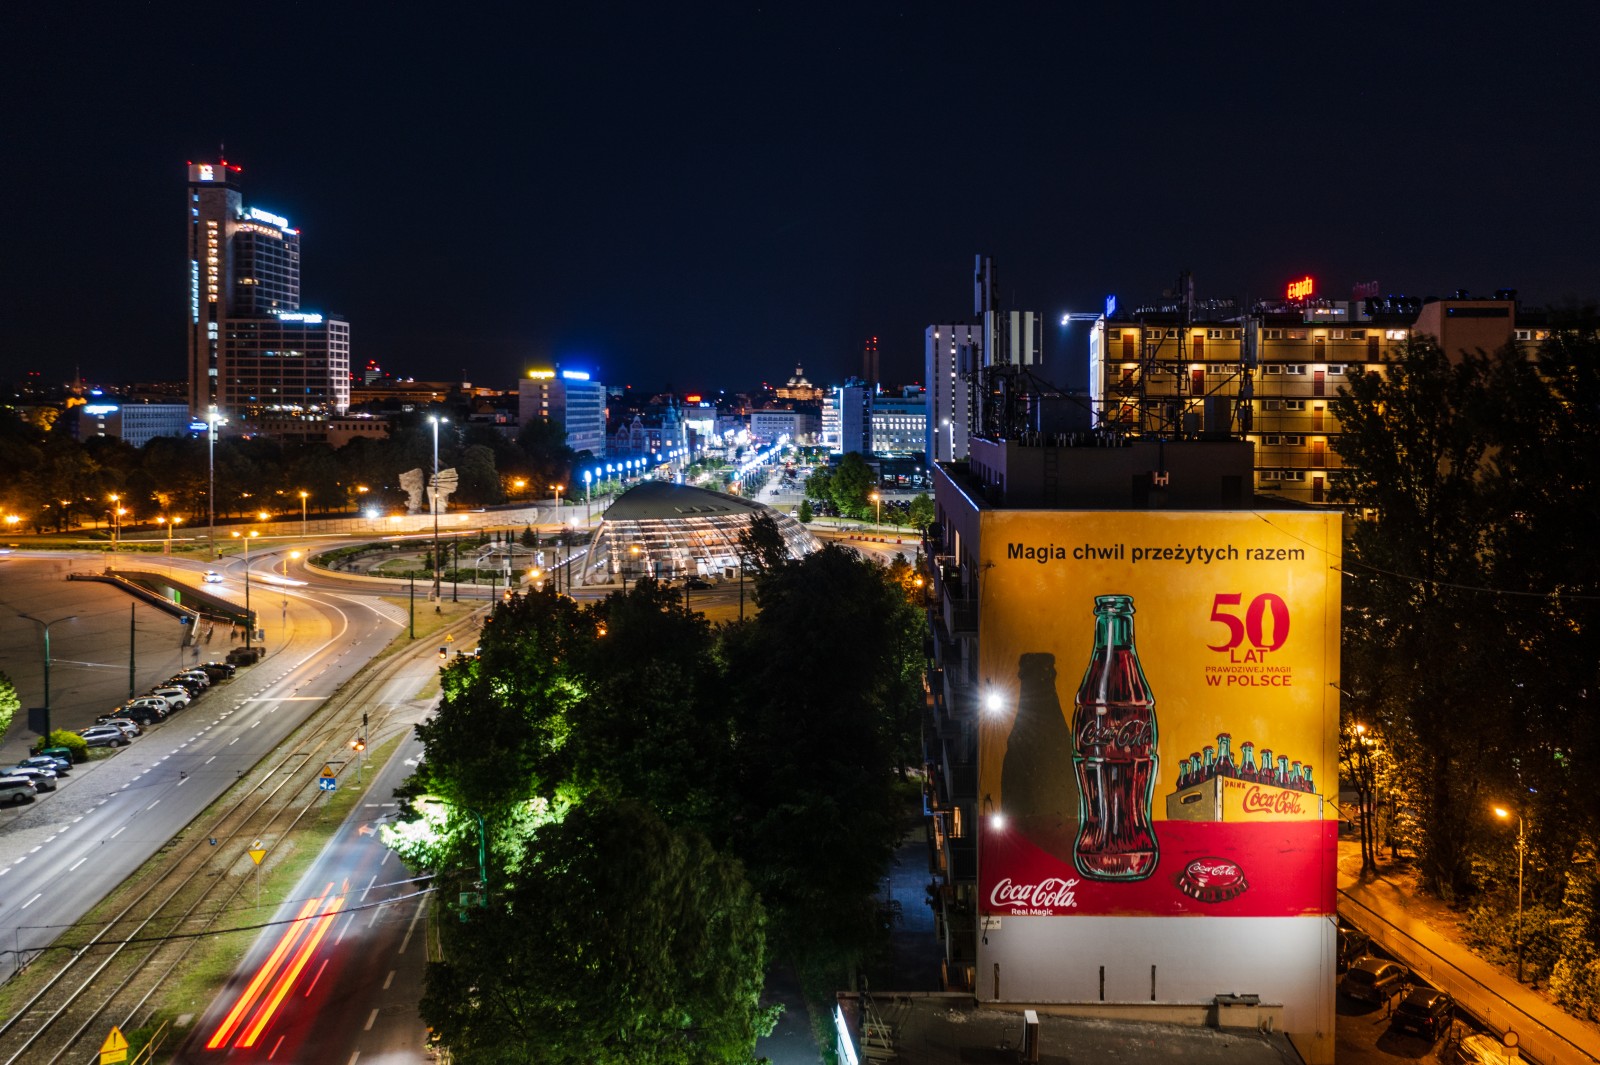 Mural z okazji 50lecia Coca-Coli (retro) w Katowicach | 50 lat prawdziwej magii w Polsce (retro) | Portfolio